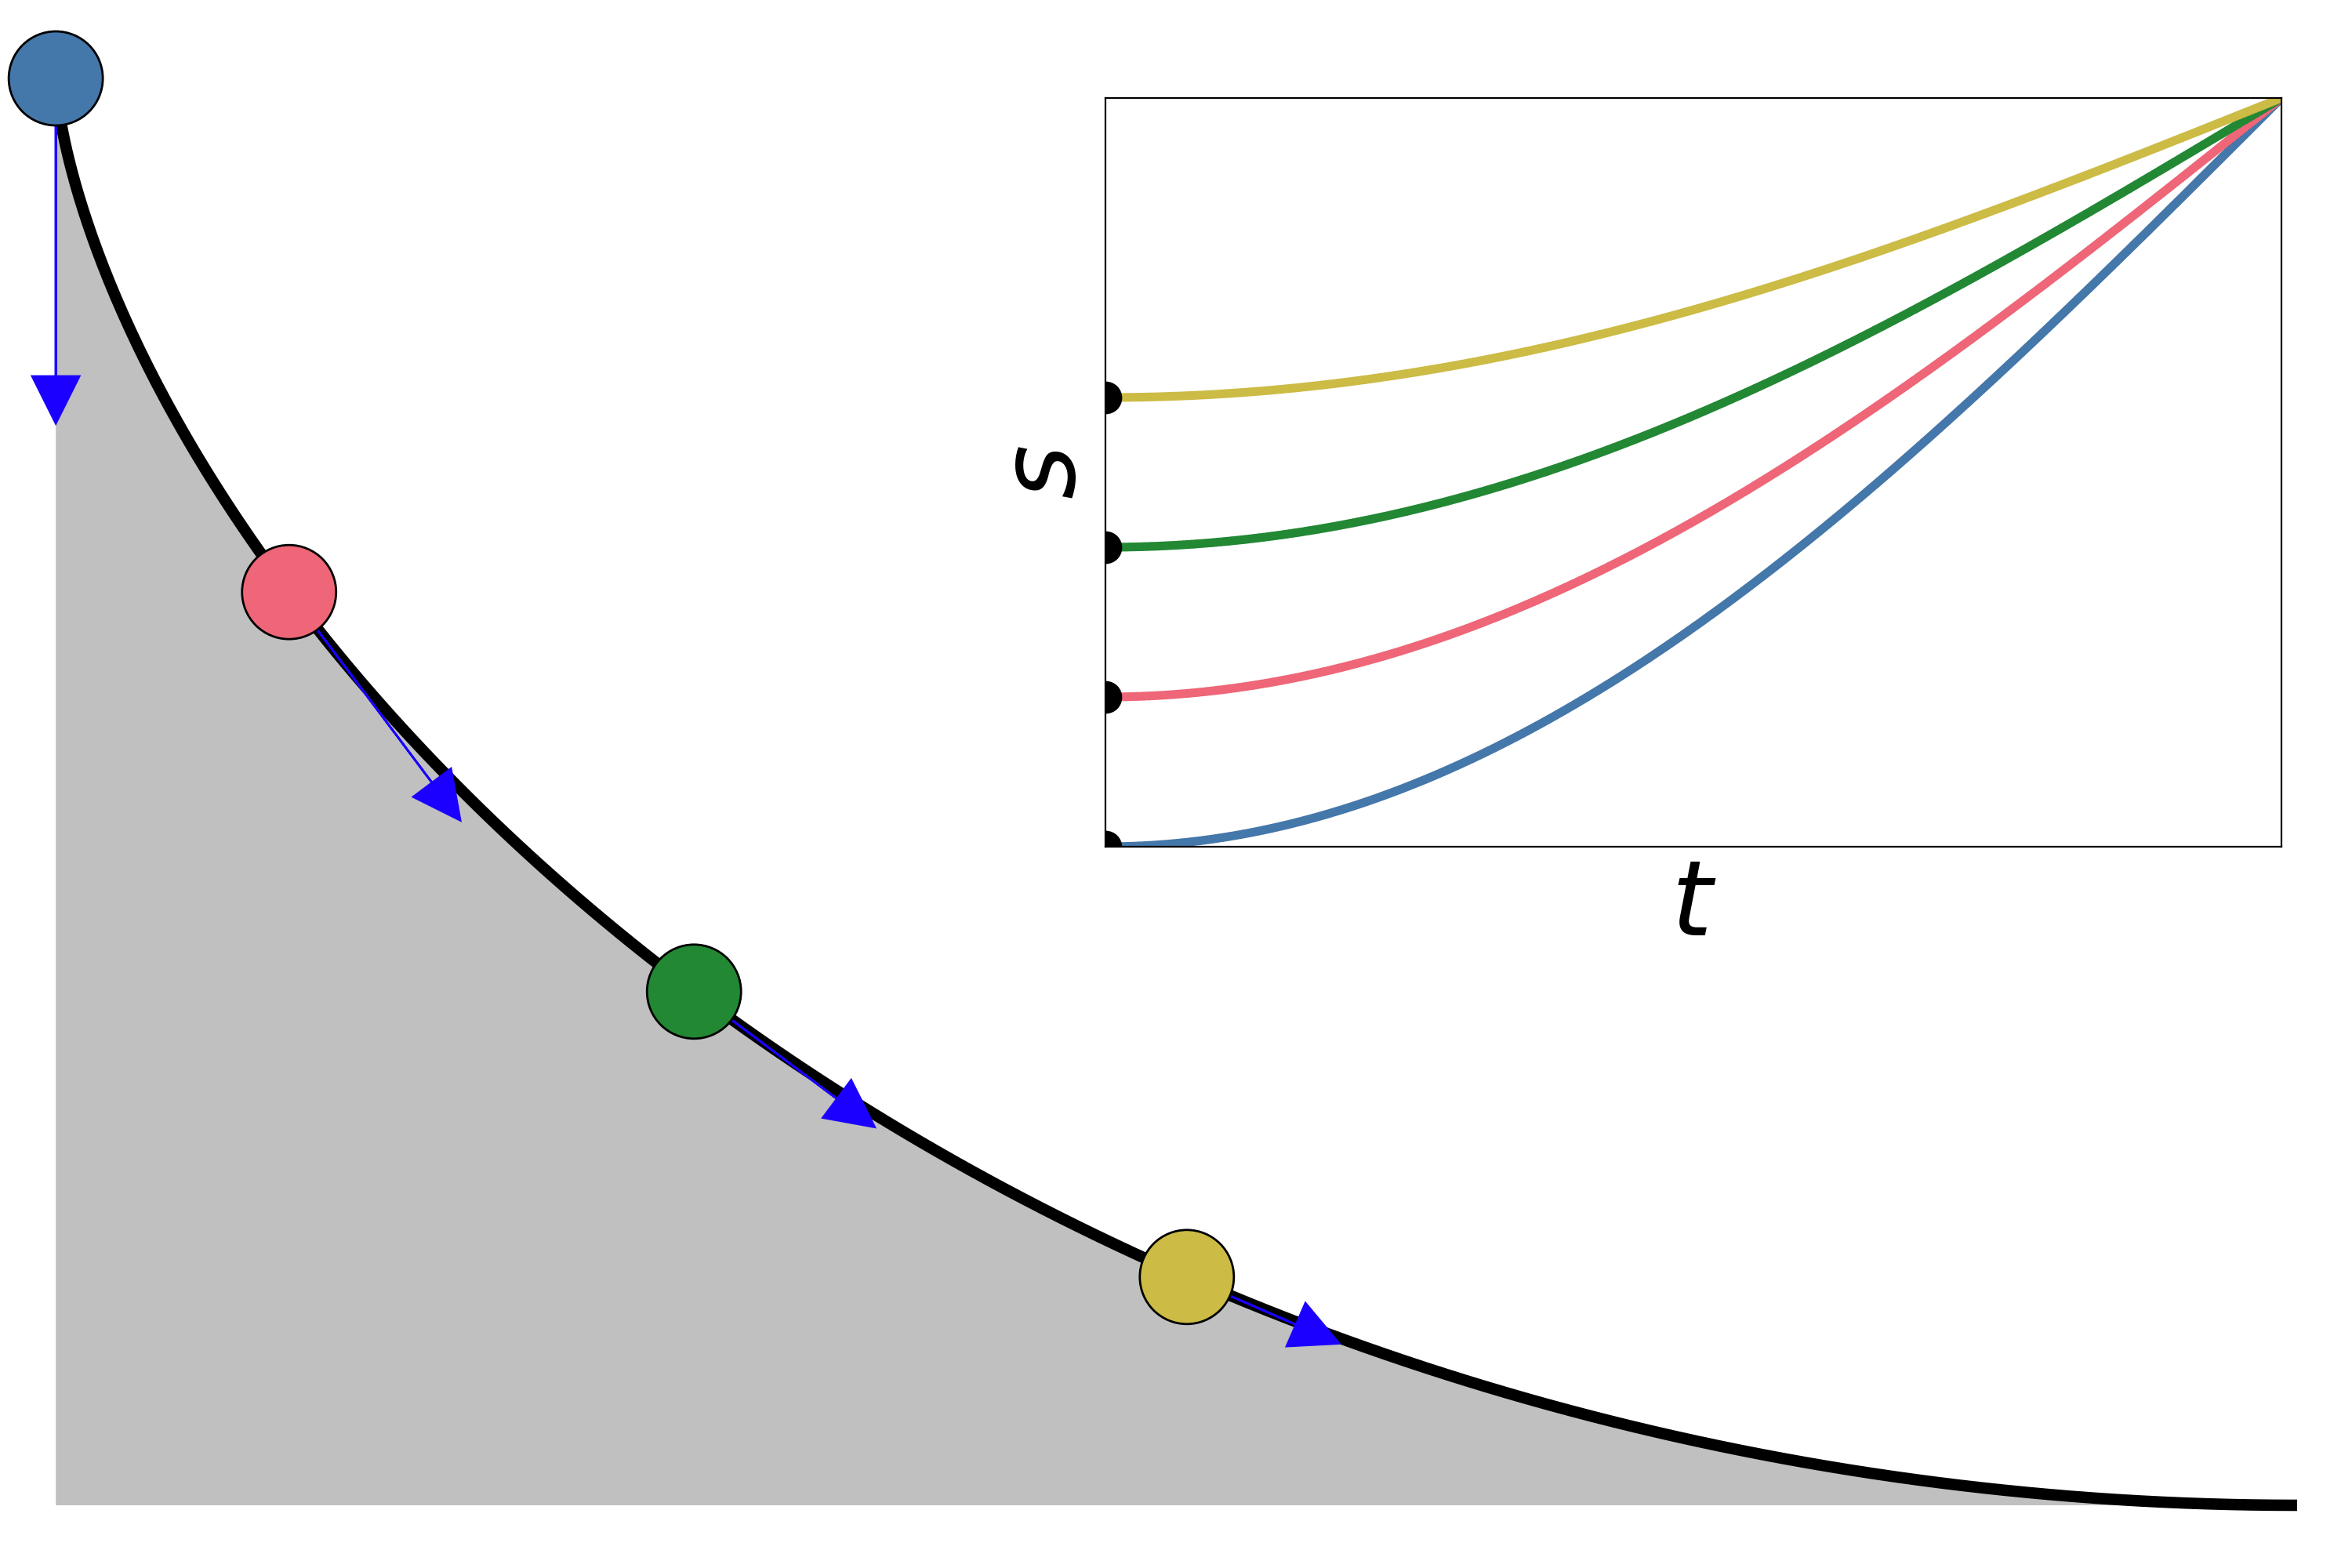 Aquí, cuatro puntos en posiciones diferentes alcanzan el fondo al mismo tiempo. En el gráfico, *s* representa la longitud del arco, *t* representa el tiempo y las flechas azules representan la aceleración a lo largo de la trayectoria. A medida que los puntos alcanzan la horizontal, la velocidad se hace constante, siendo la longitud de arco lineal al tiempo. Código fuente (Python) para generar la animación [aquí](tautocrona.py), adaptado de https://commons.wikimedia.org/wiki/File:Tautochrone_curve.gif.